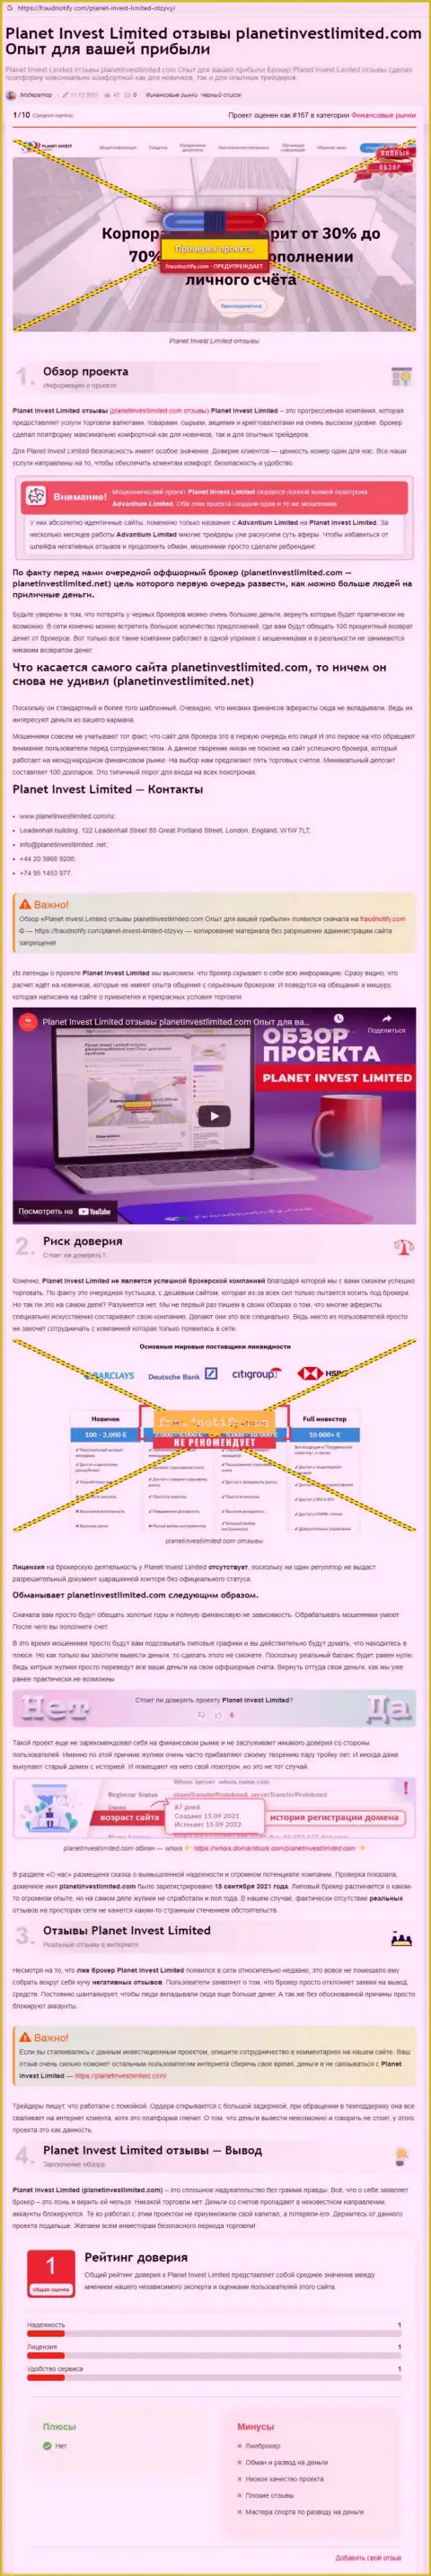 Обзор мошеннических уловок компании Planet Invest Limited, зарекомендовавшей себя, как интернет мошенника